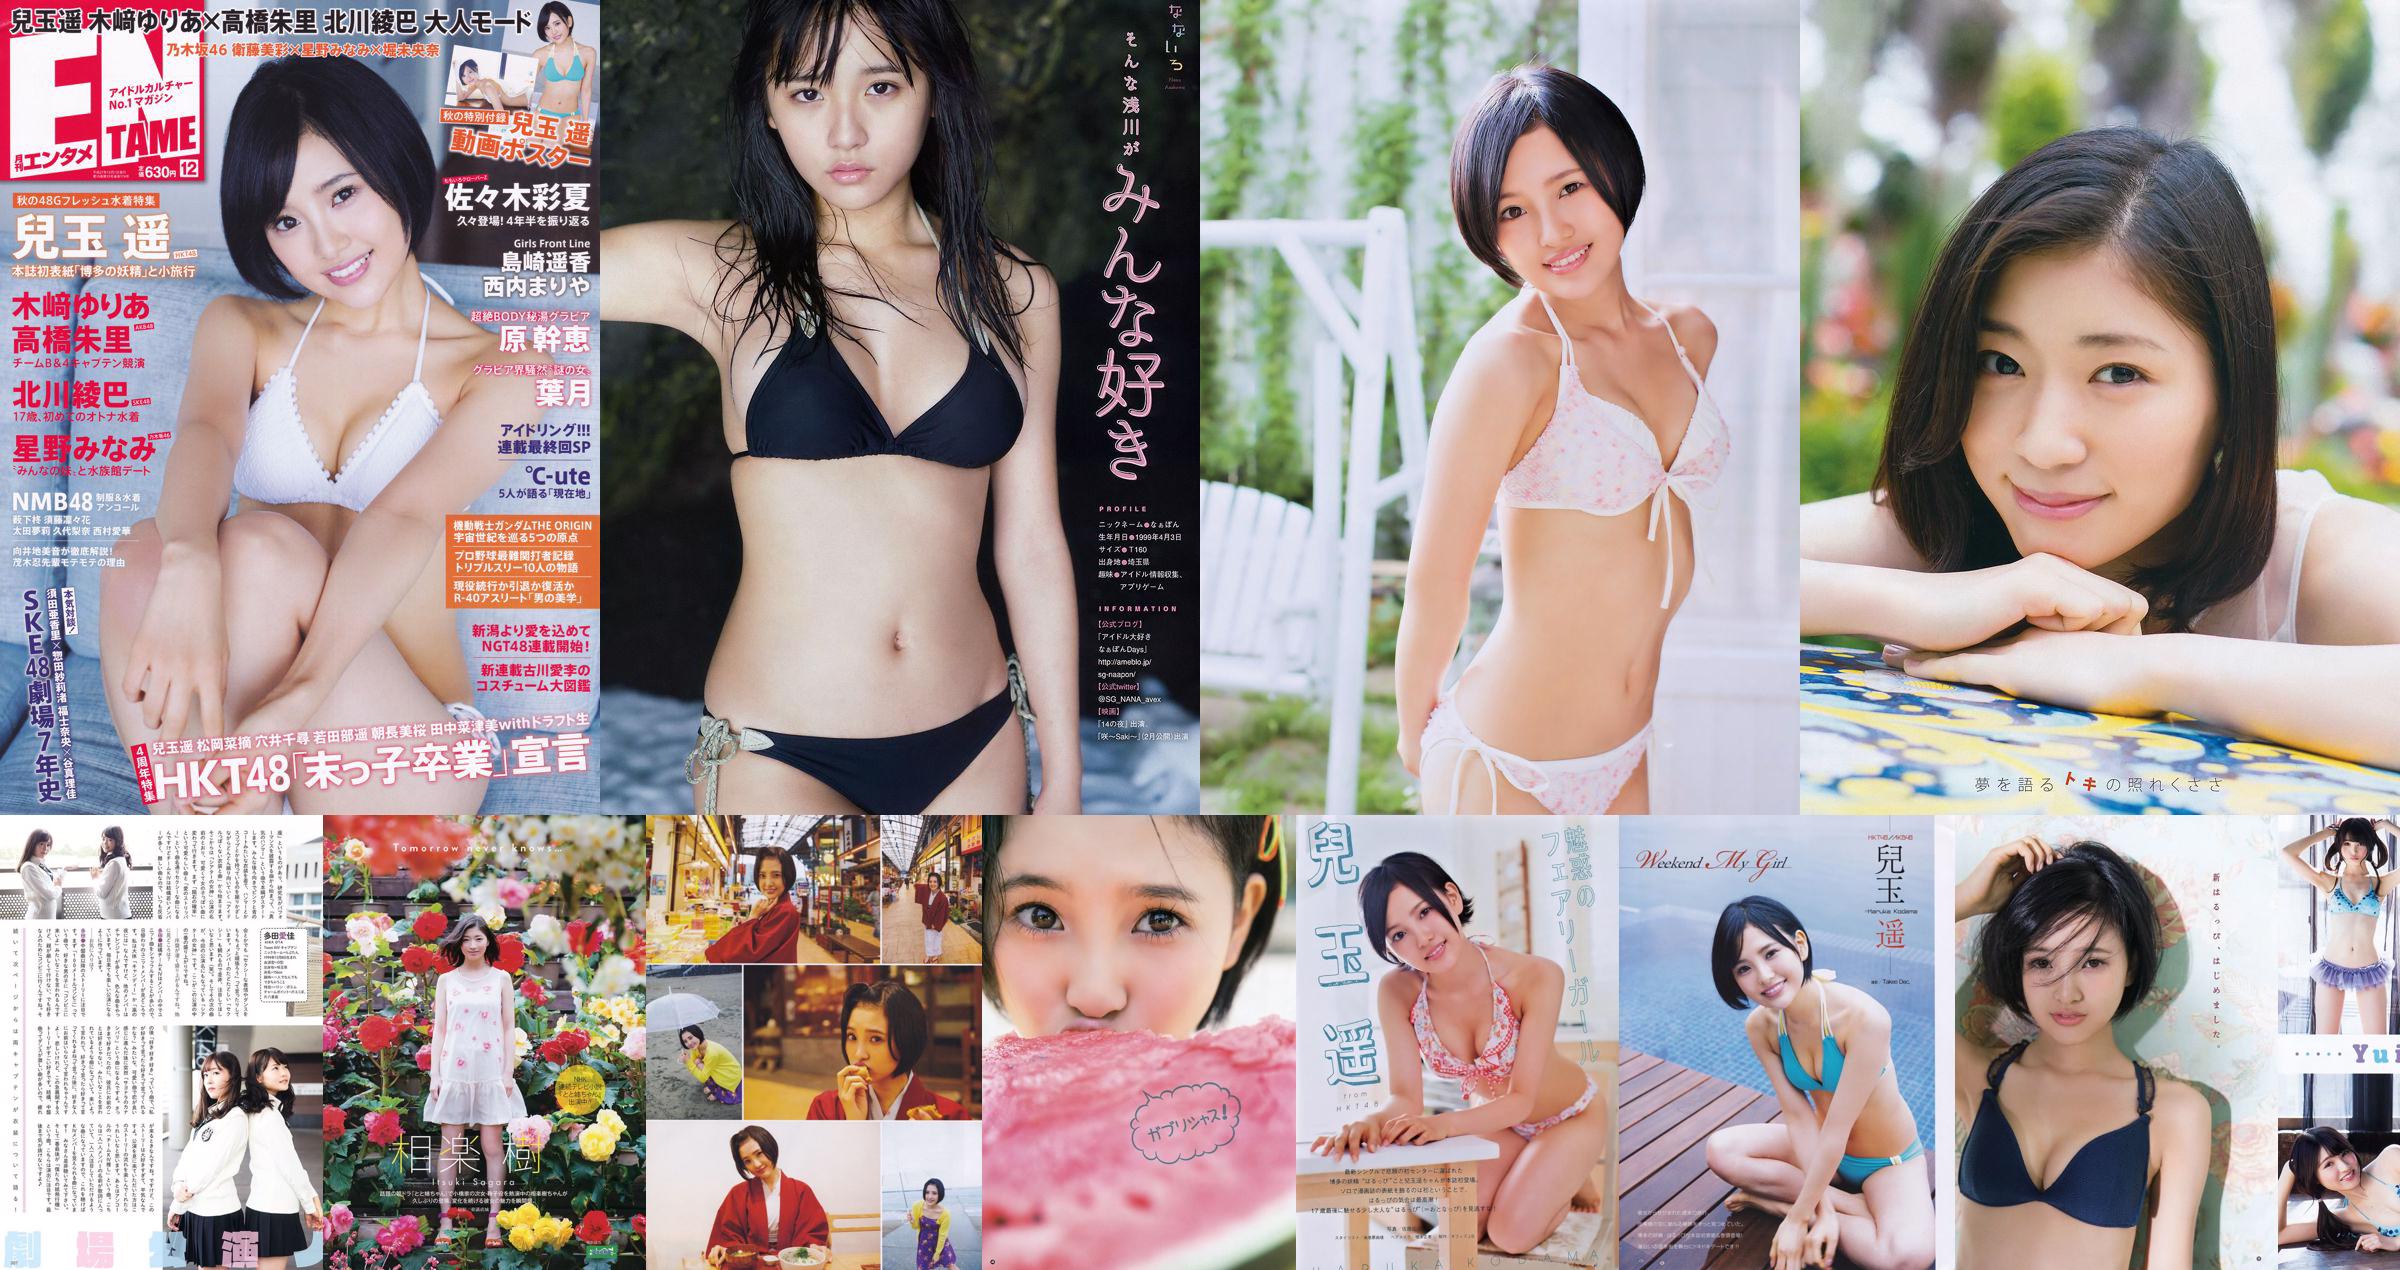 [Young Gangan] Haruka Kodama Itsuki Sagara 2016 No.11 Photo Magazine No.63ad2b Página 1